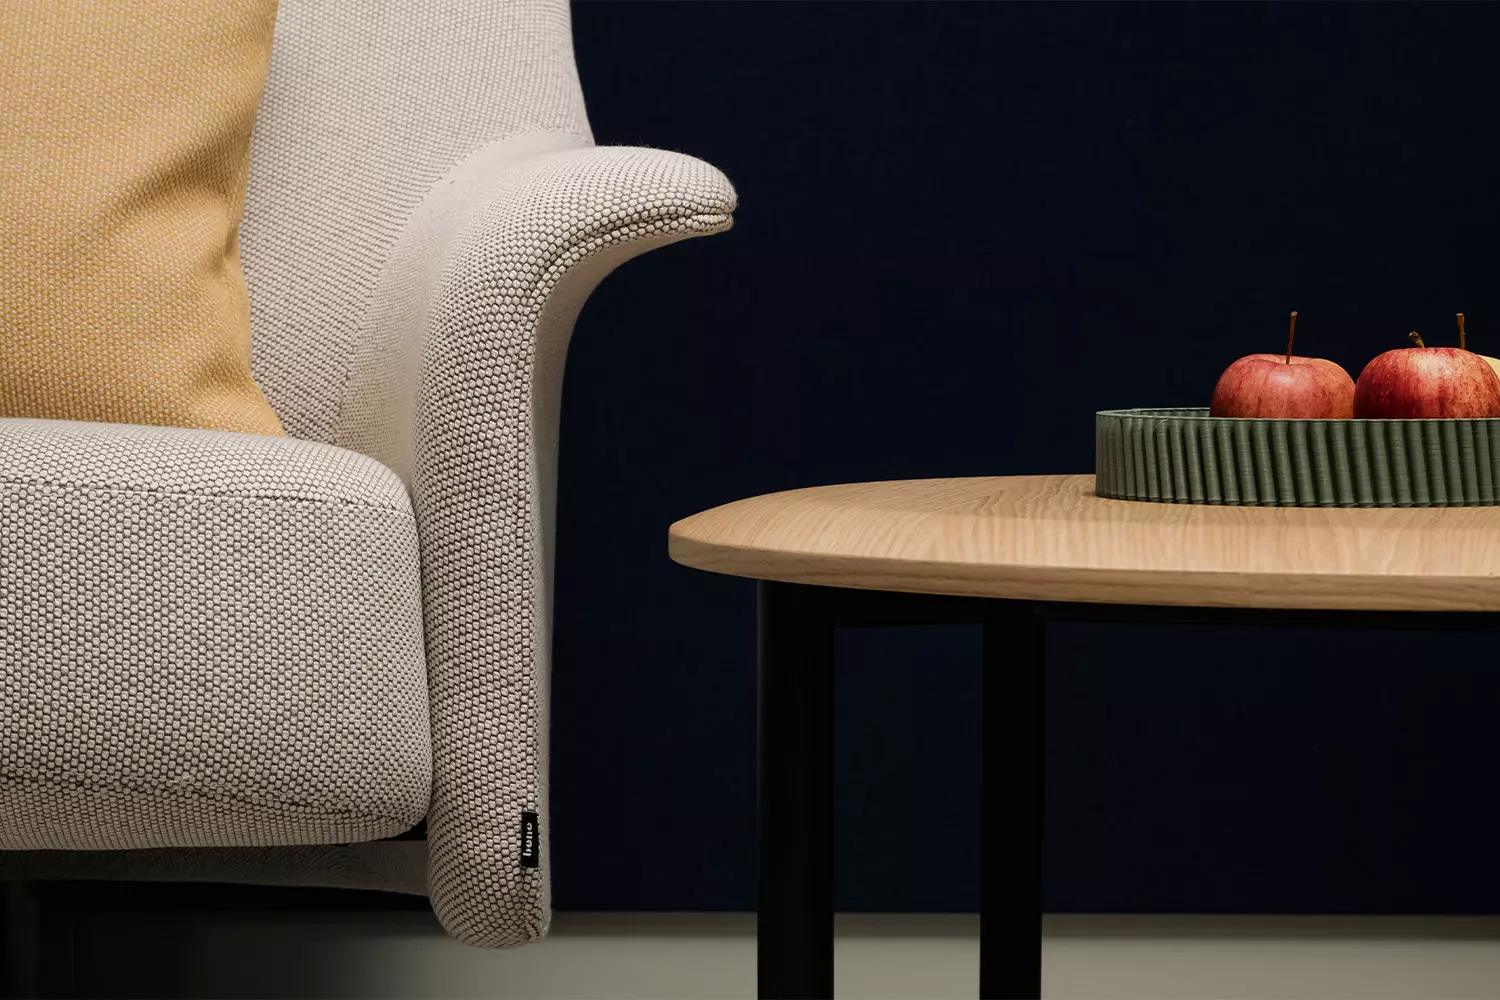 ports-coffee-table, Premium (elektrisch) höheneinstellbar Sitzhöhe Stehhöhe  Couch- & Beistelltisch, Bene Büromöbel, Bild 3